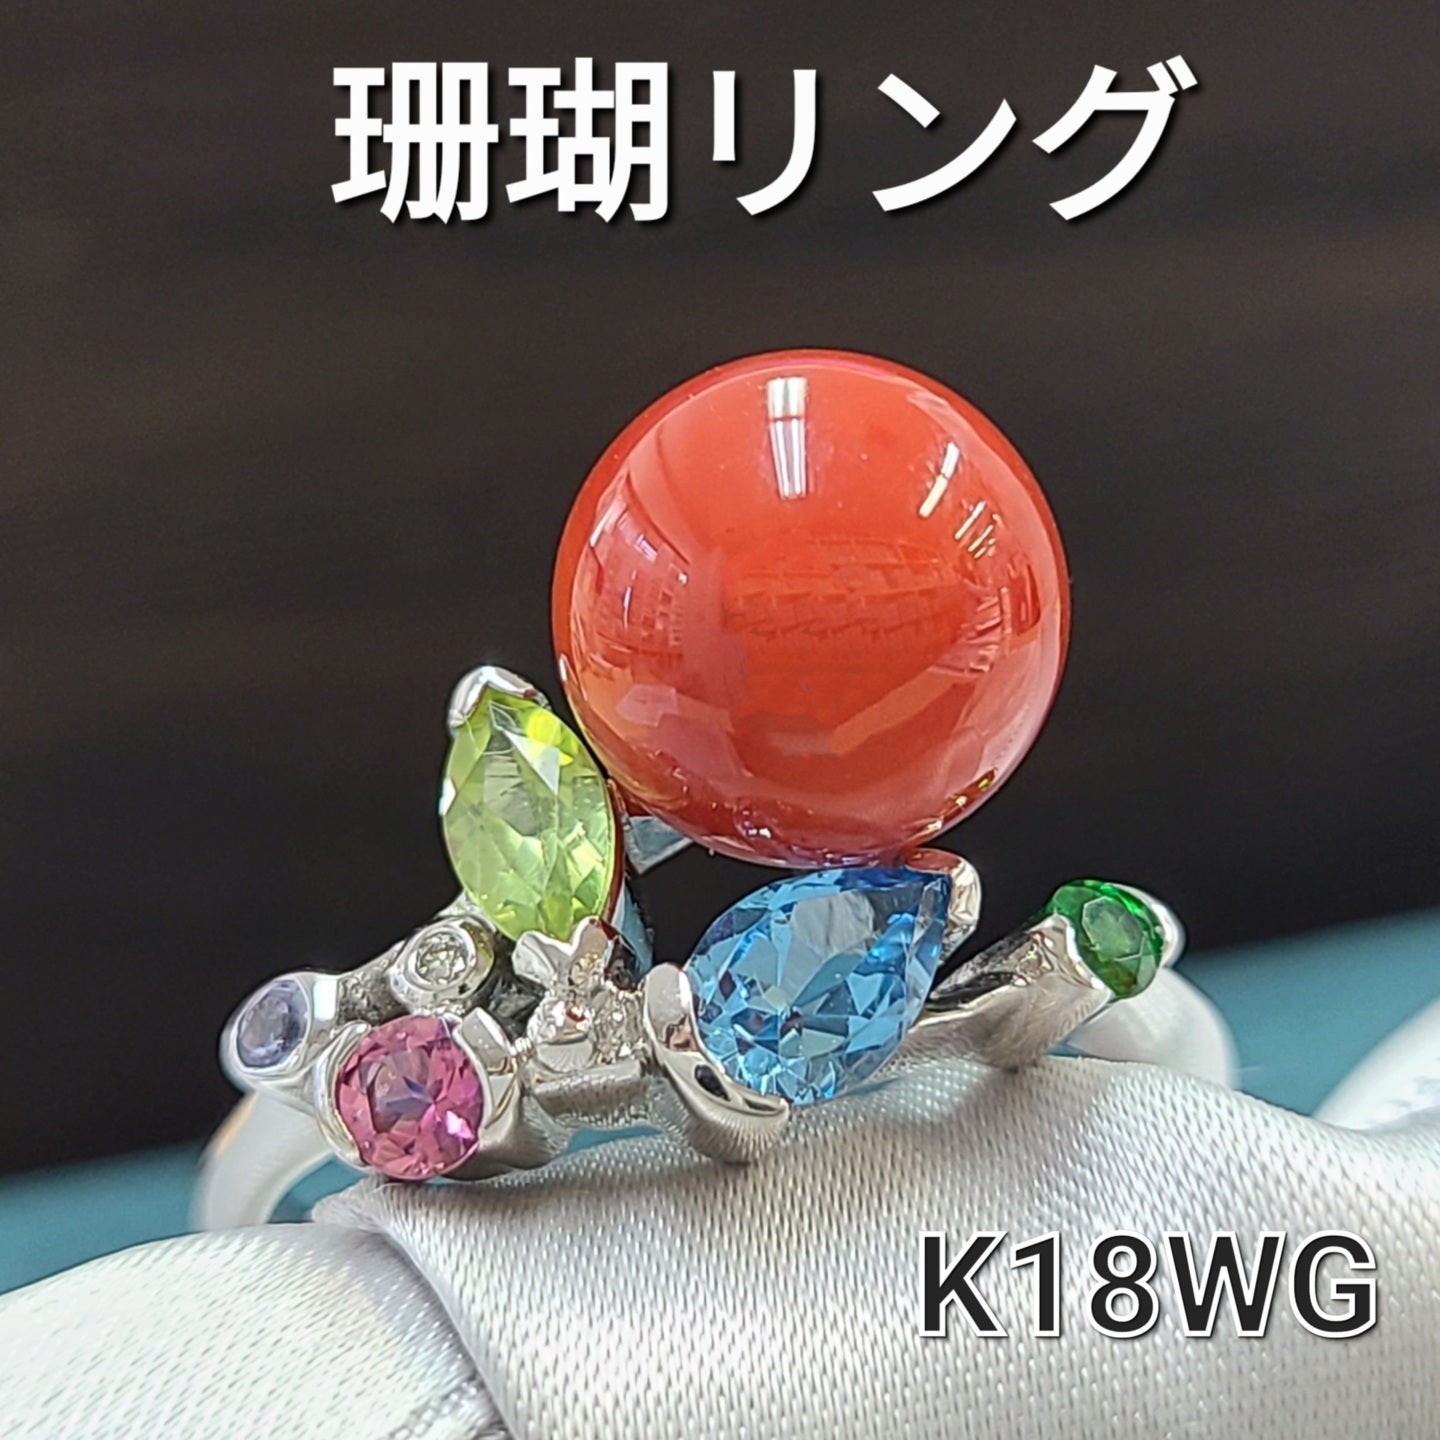 鮮やか 珊瑚 カラーストーン ダイヤモンド K18 WG ホワイトゴールド マルチカラー リング 指輪 3月誕生石 【鑑別書付】